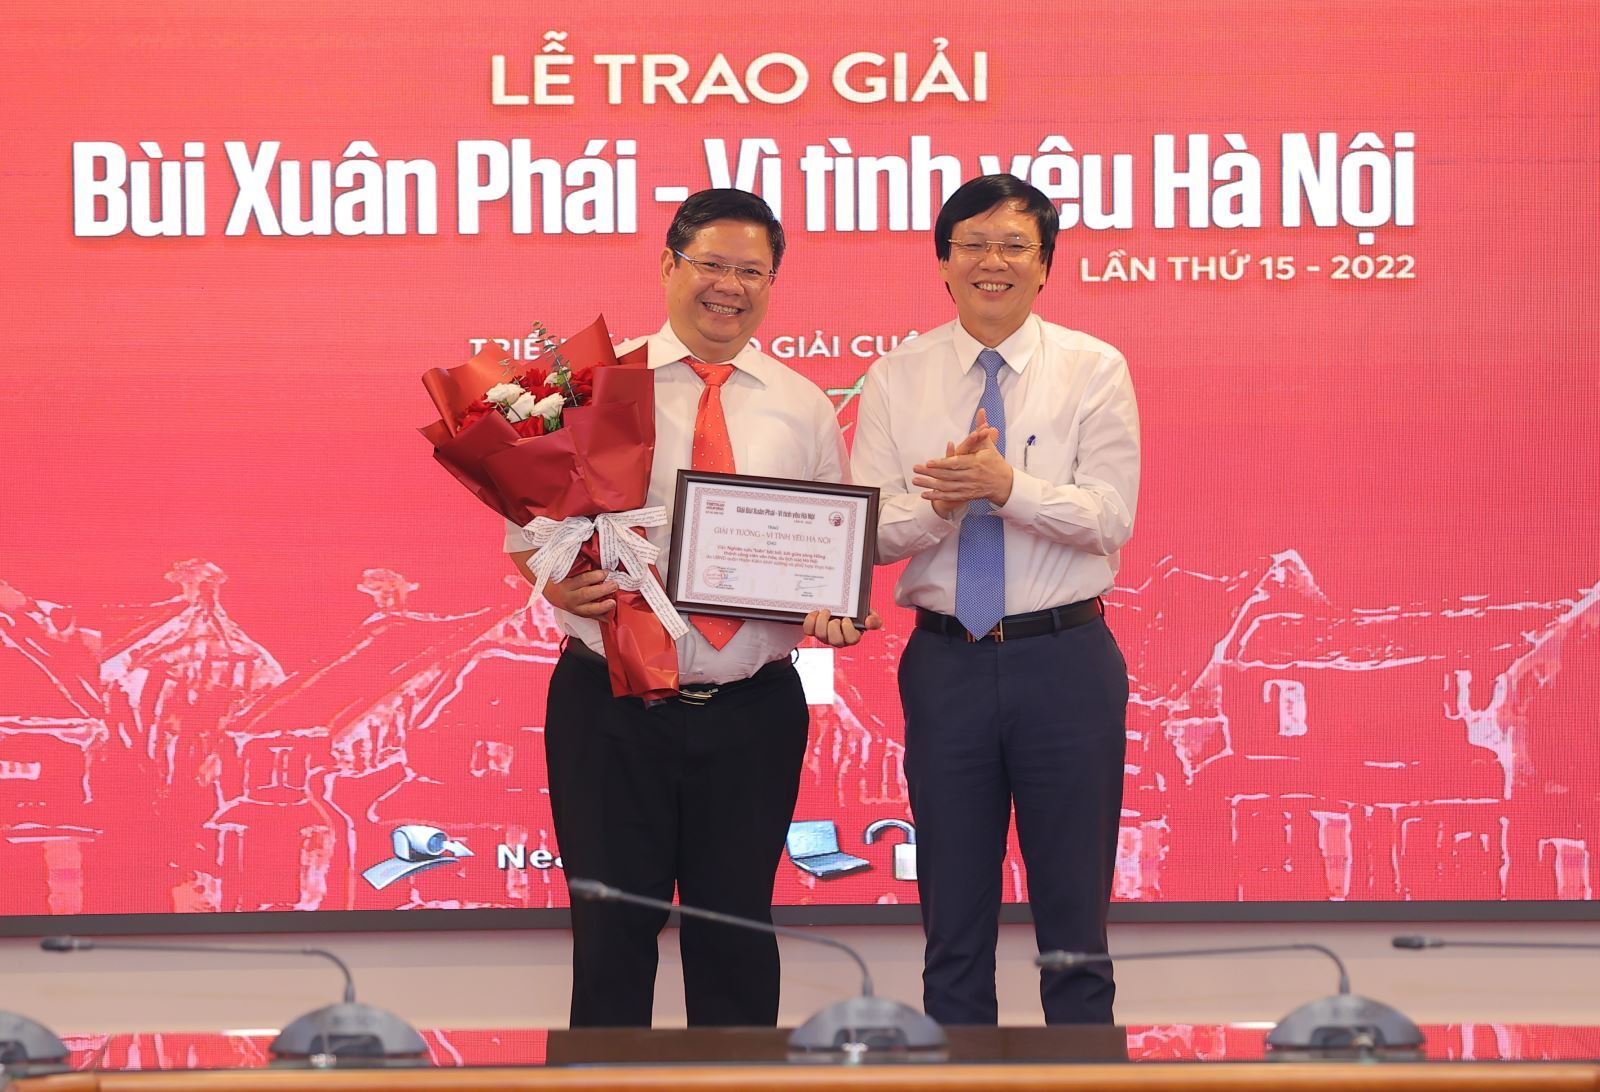 Đạo diễn phim “Hà Nội trong mắt ai” thắng Giải Bùi Xuân Phái - 2022 - 4